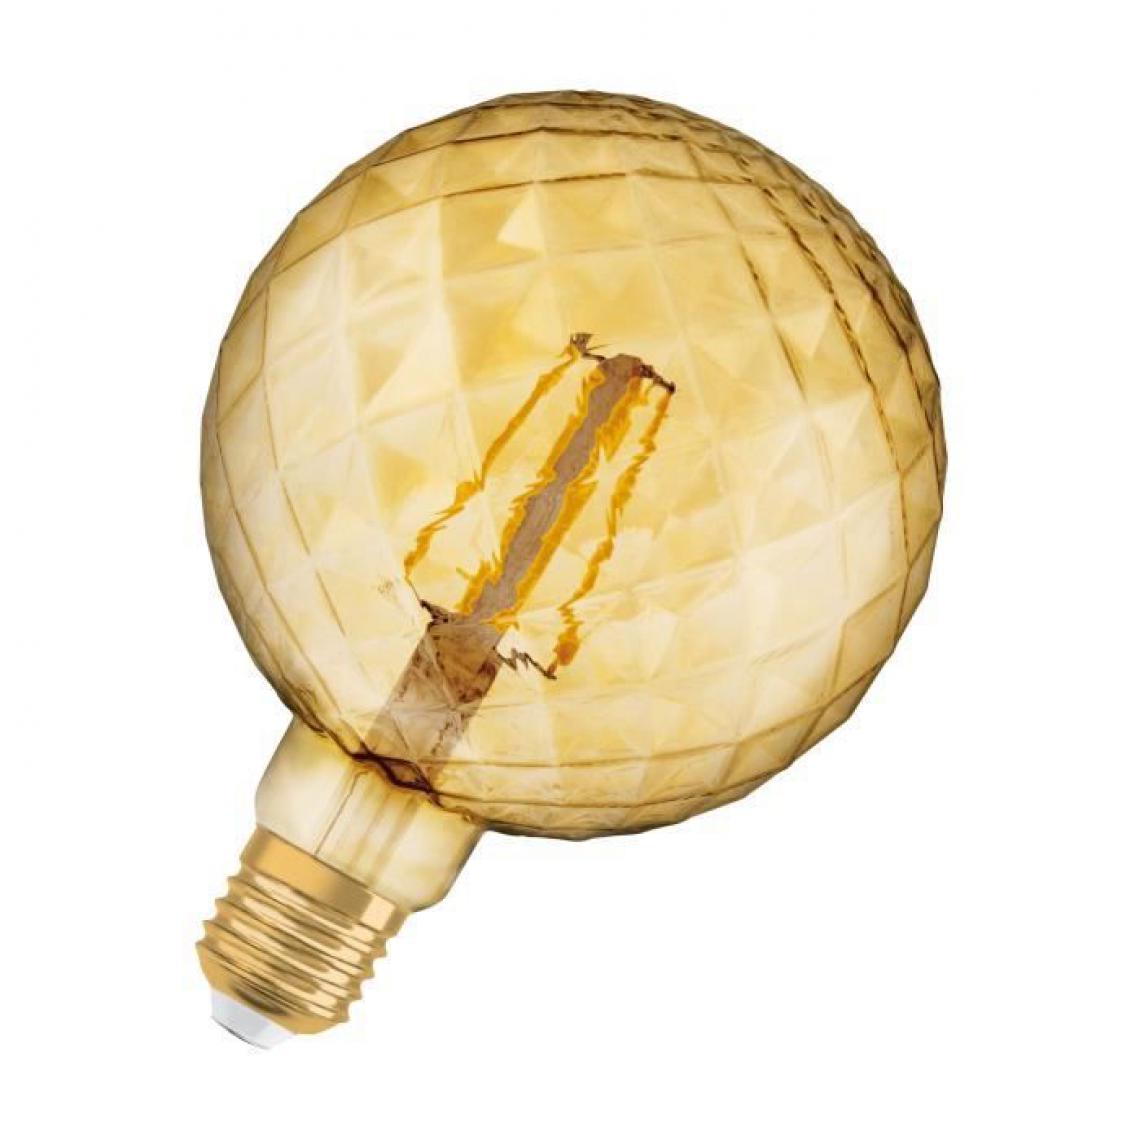 Icaverne - AMPOULE - AMPOULE LED - AMPOULE HALOGENE Ampoule LED E27 ananas Vintage Edition 1906 - 4,5 W - Ambré - Ampoules LED